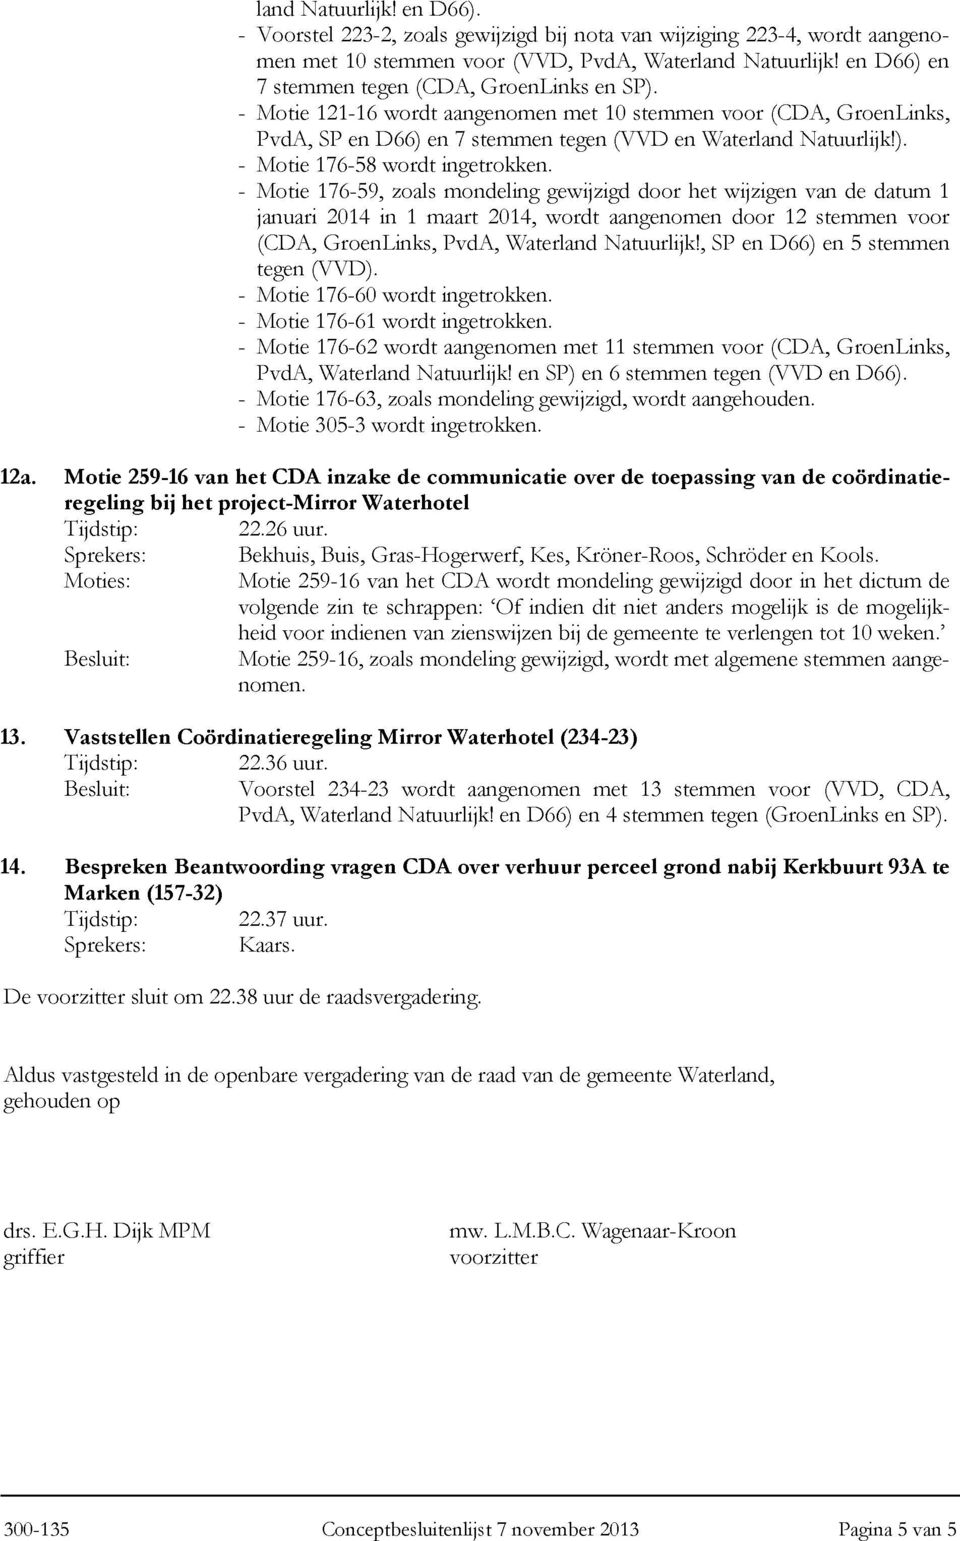 - Motie 176-59, zoals mondeling gewijzigd door het wijzigen van de datum 1 januari 2014 in 1 maart 2014, wordt aangenomen door 12 stemmen voor (CDA, GroenLinks, PvdA, Waterland Natuurlijk!